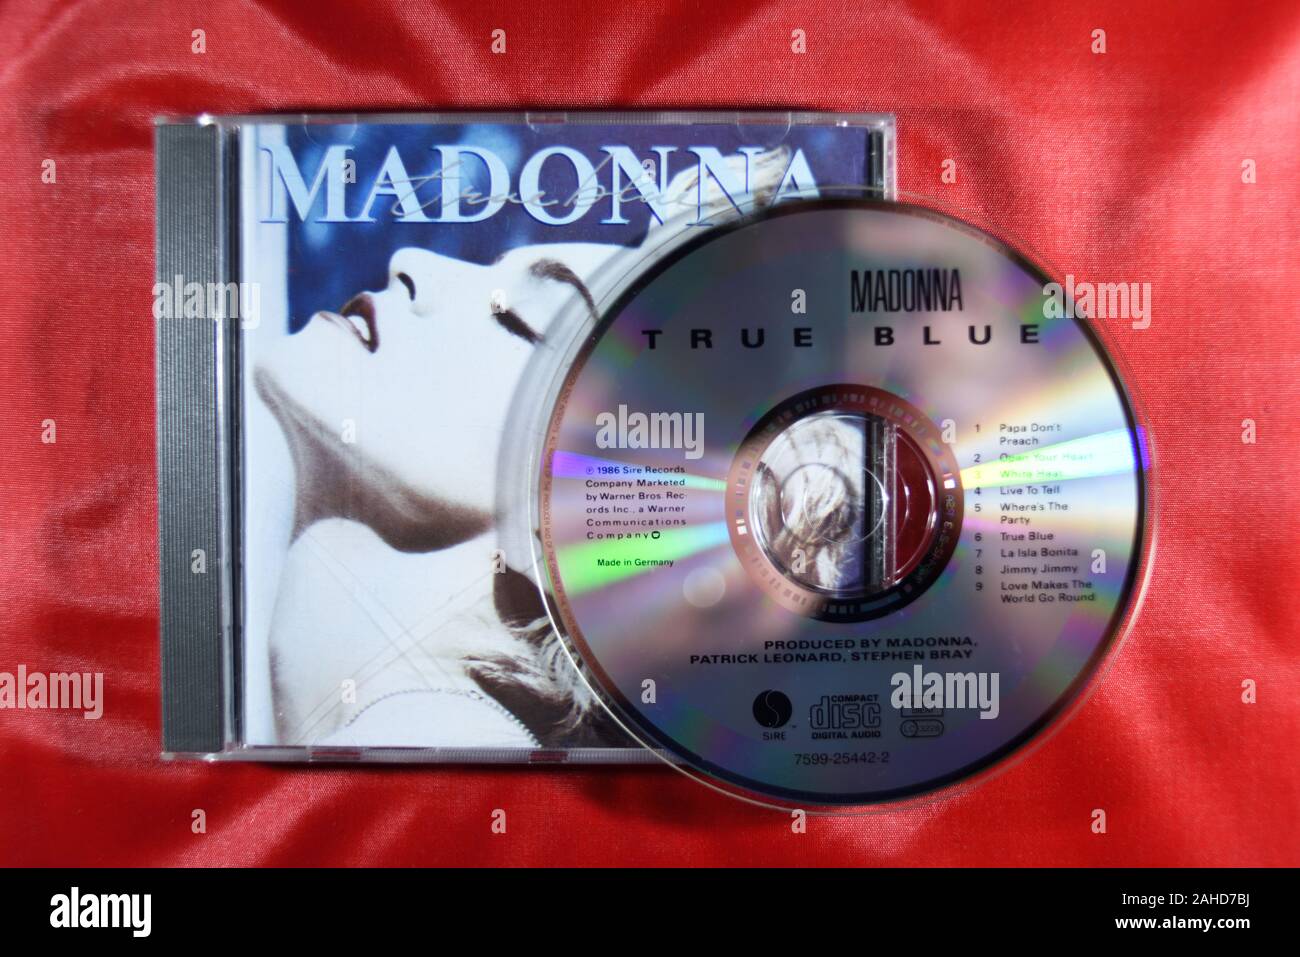 CD de musique, Madonna True Blue. Banque D'Images